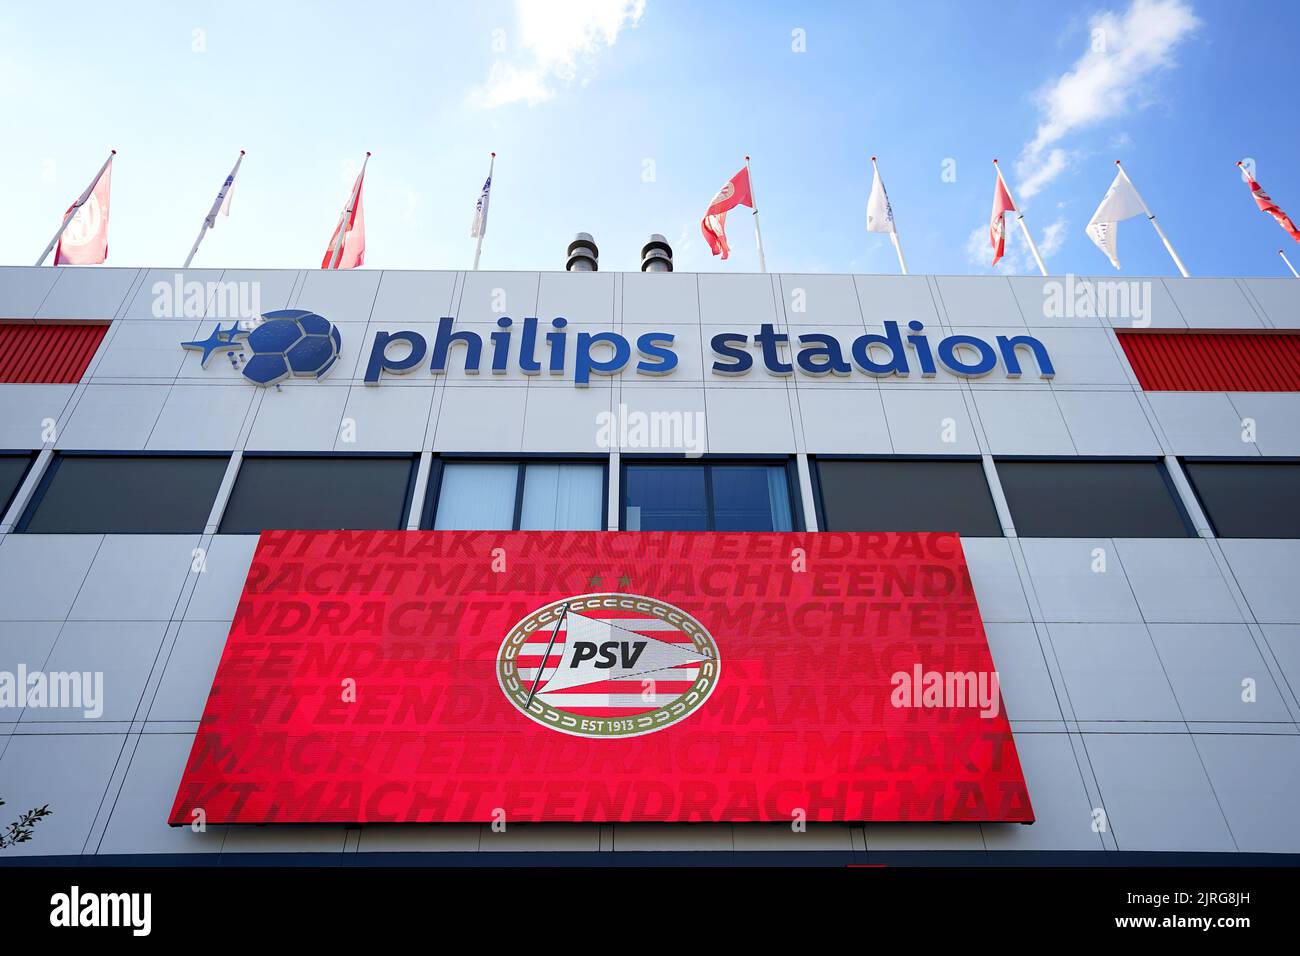 Une vue générale du stade avant le match de qualification de l'UEFA Champions League au PSV Stadion, Eindhoven. Date de la photo: Mercredi 24 août 2022. Banque D'Images